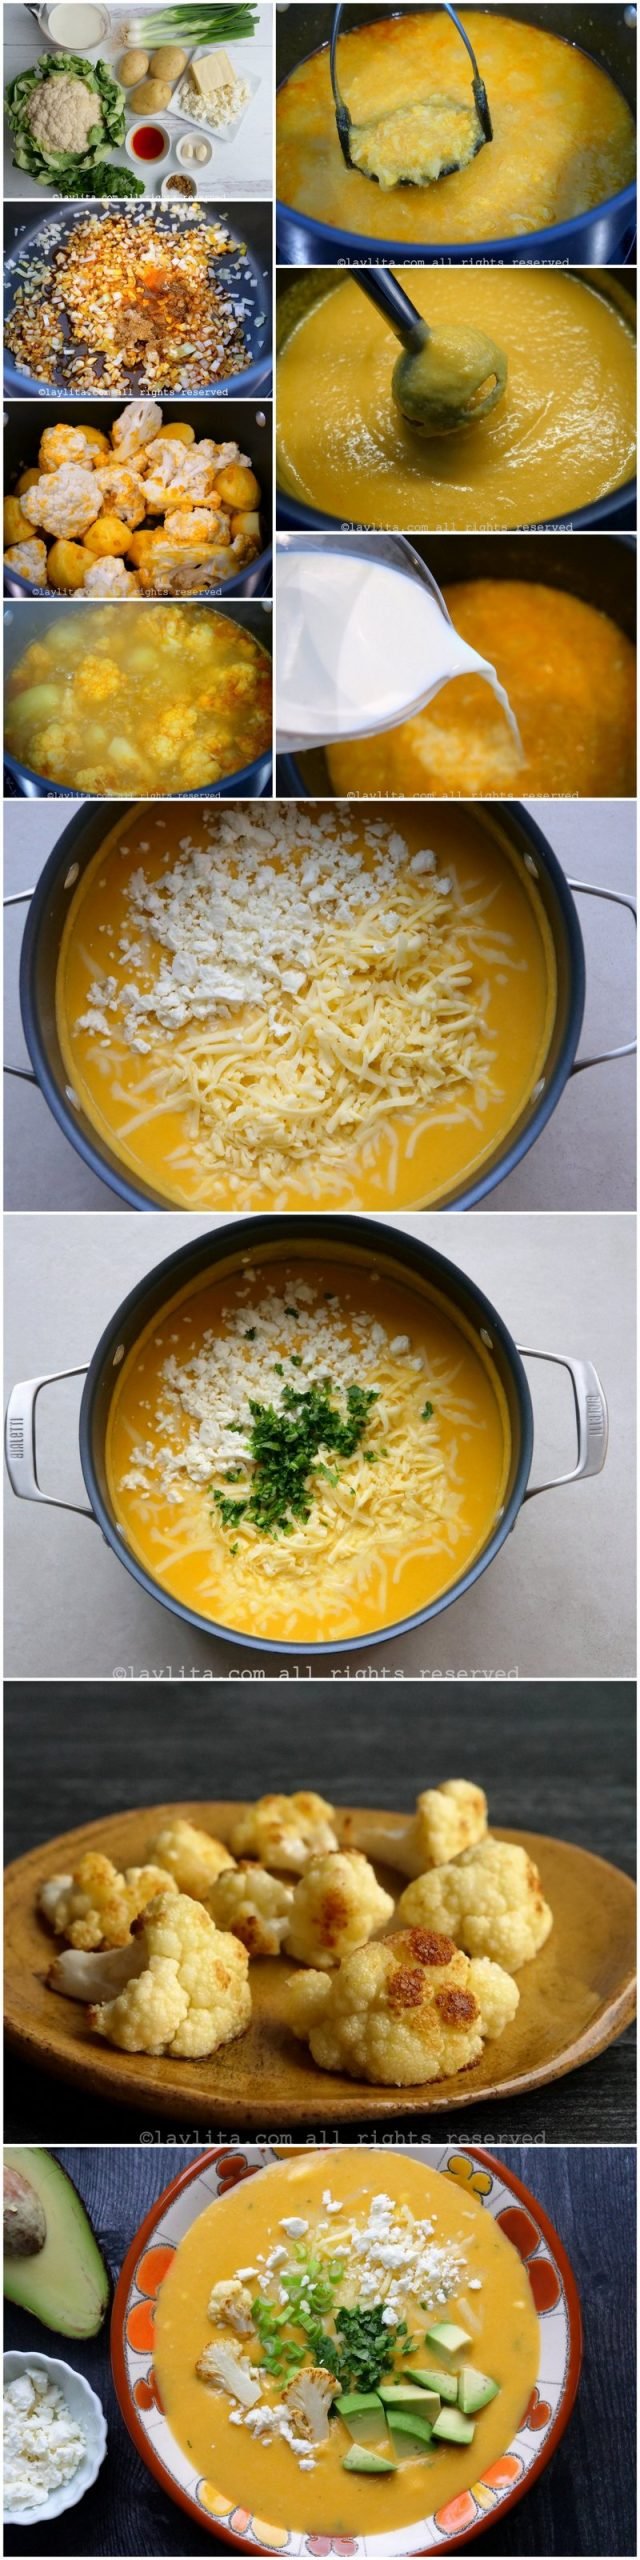 Preparación paso a paso del locro de coliflor o sopa de coliflor con papas y queso